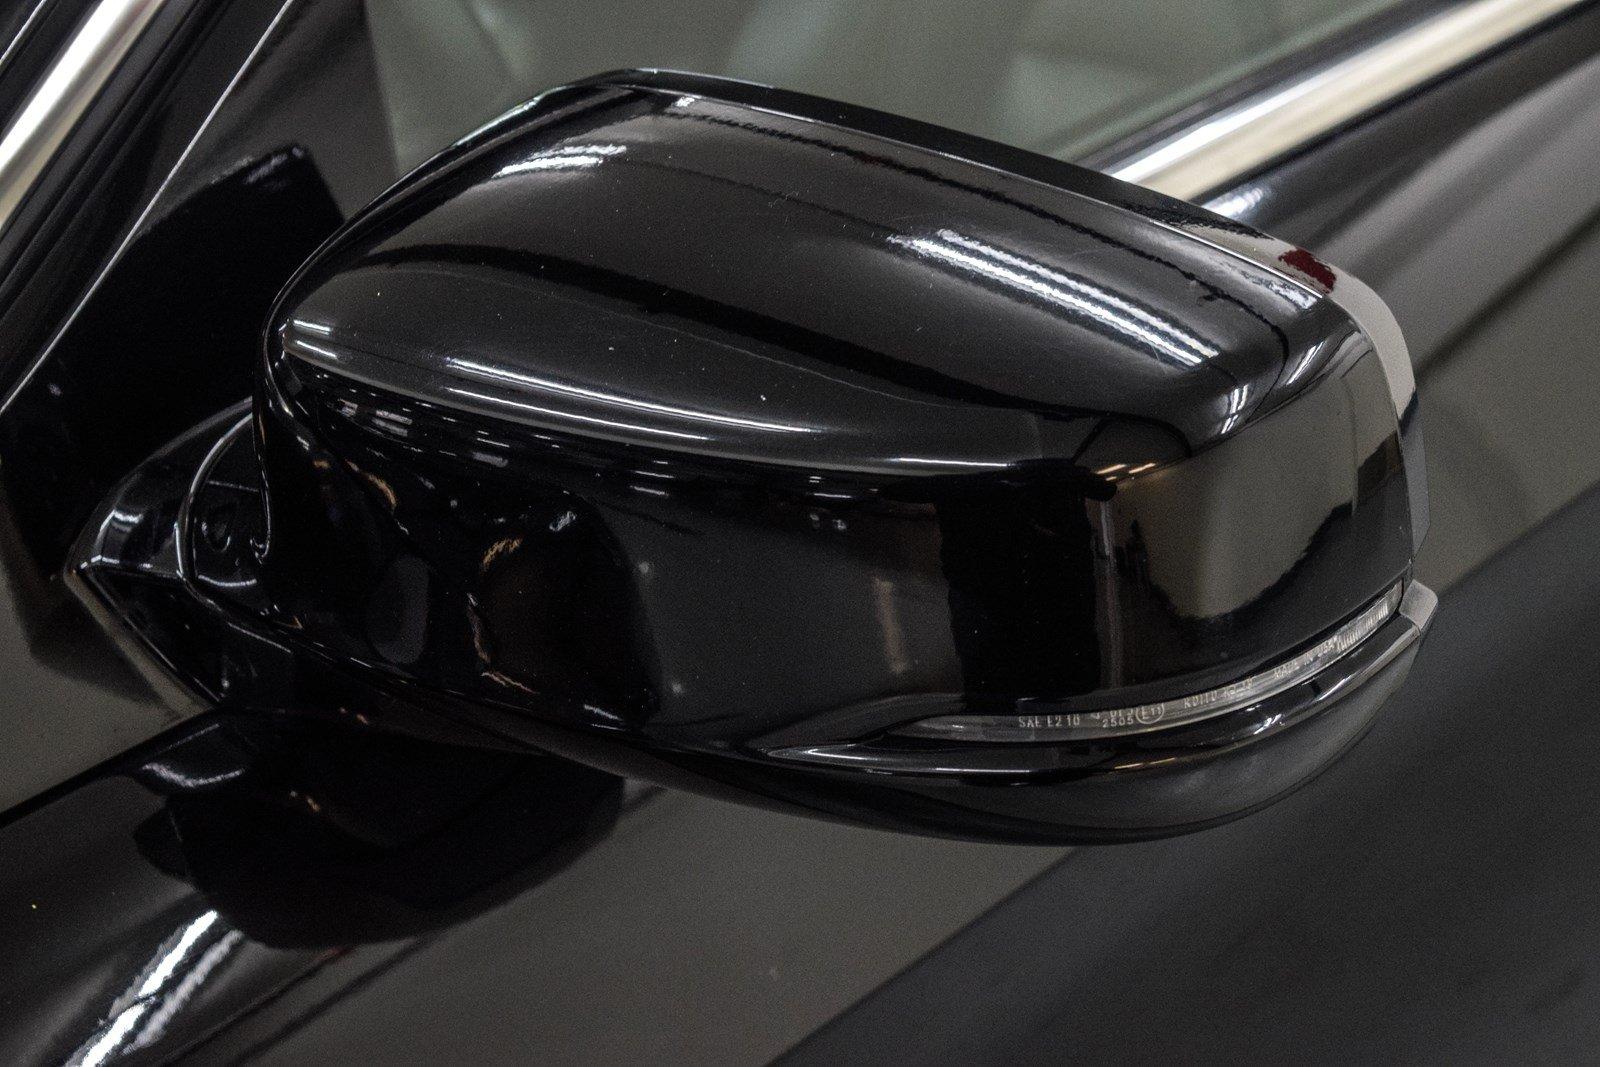 Used 2014 Honda Accord Coupe EX-L for sale Sold at Gravity Autos Marietta in Marietta GA 30060 18